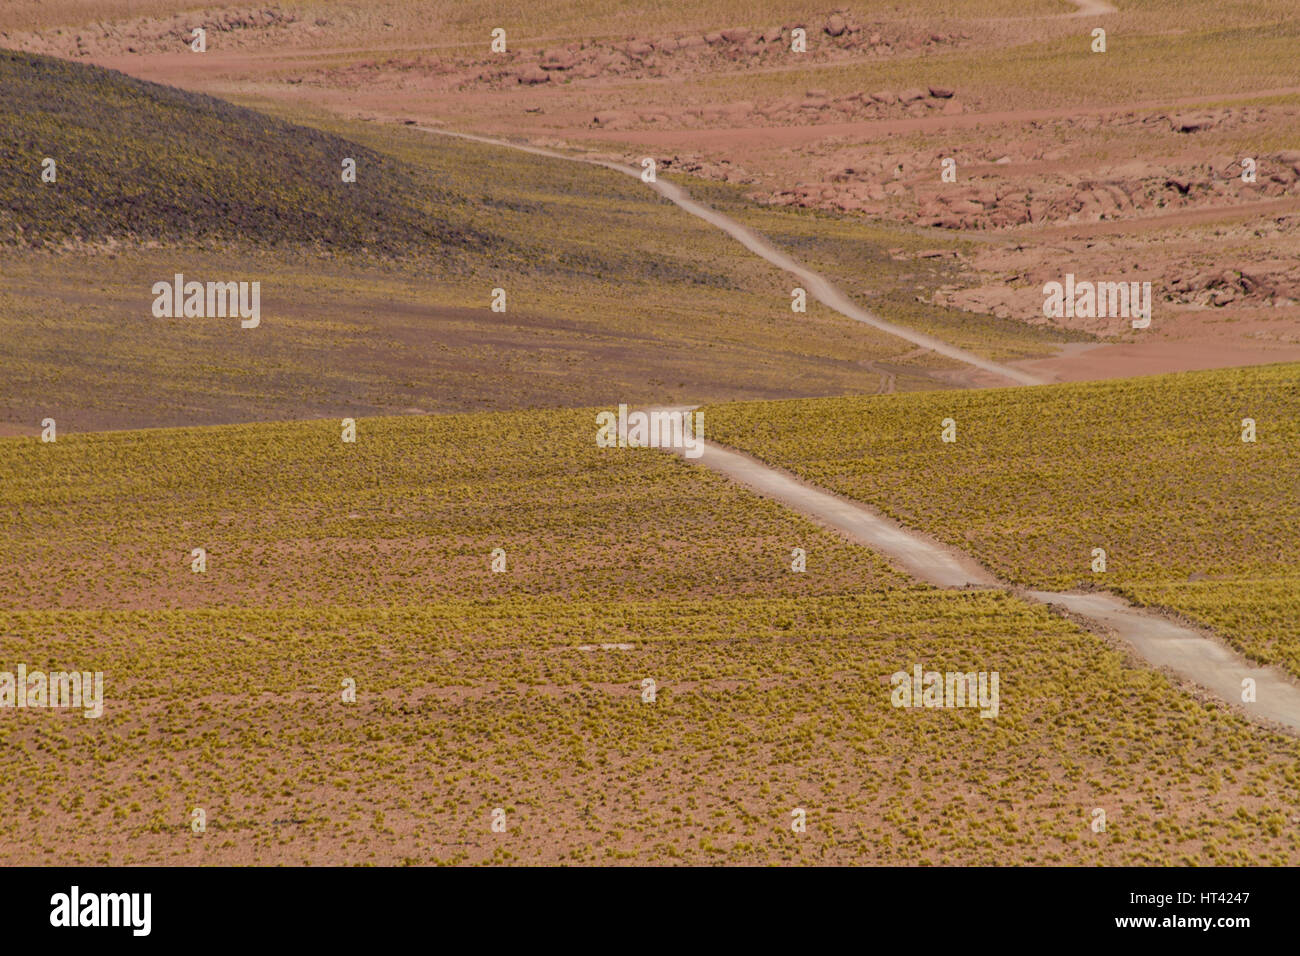 Gravel road in Andean landscape. Location: Between San Pedro de Atacama and El Tatio geysir field, Atacama, north Chile Stock Photo